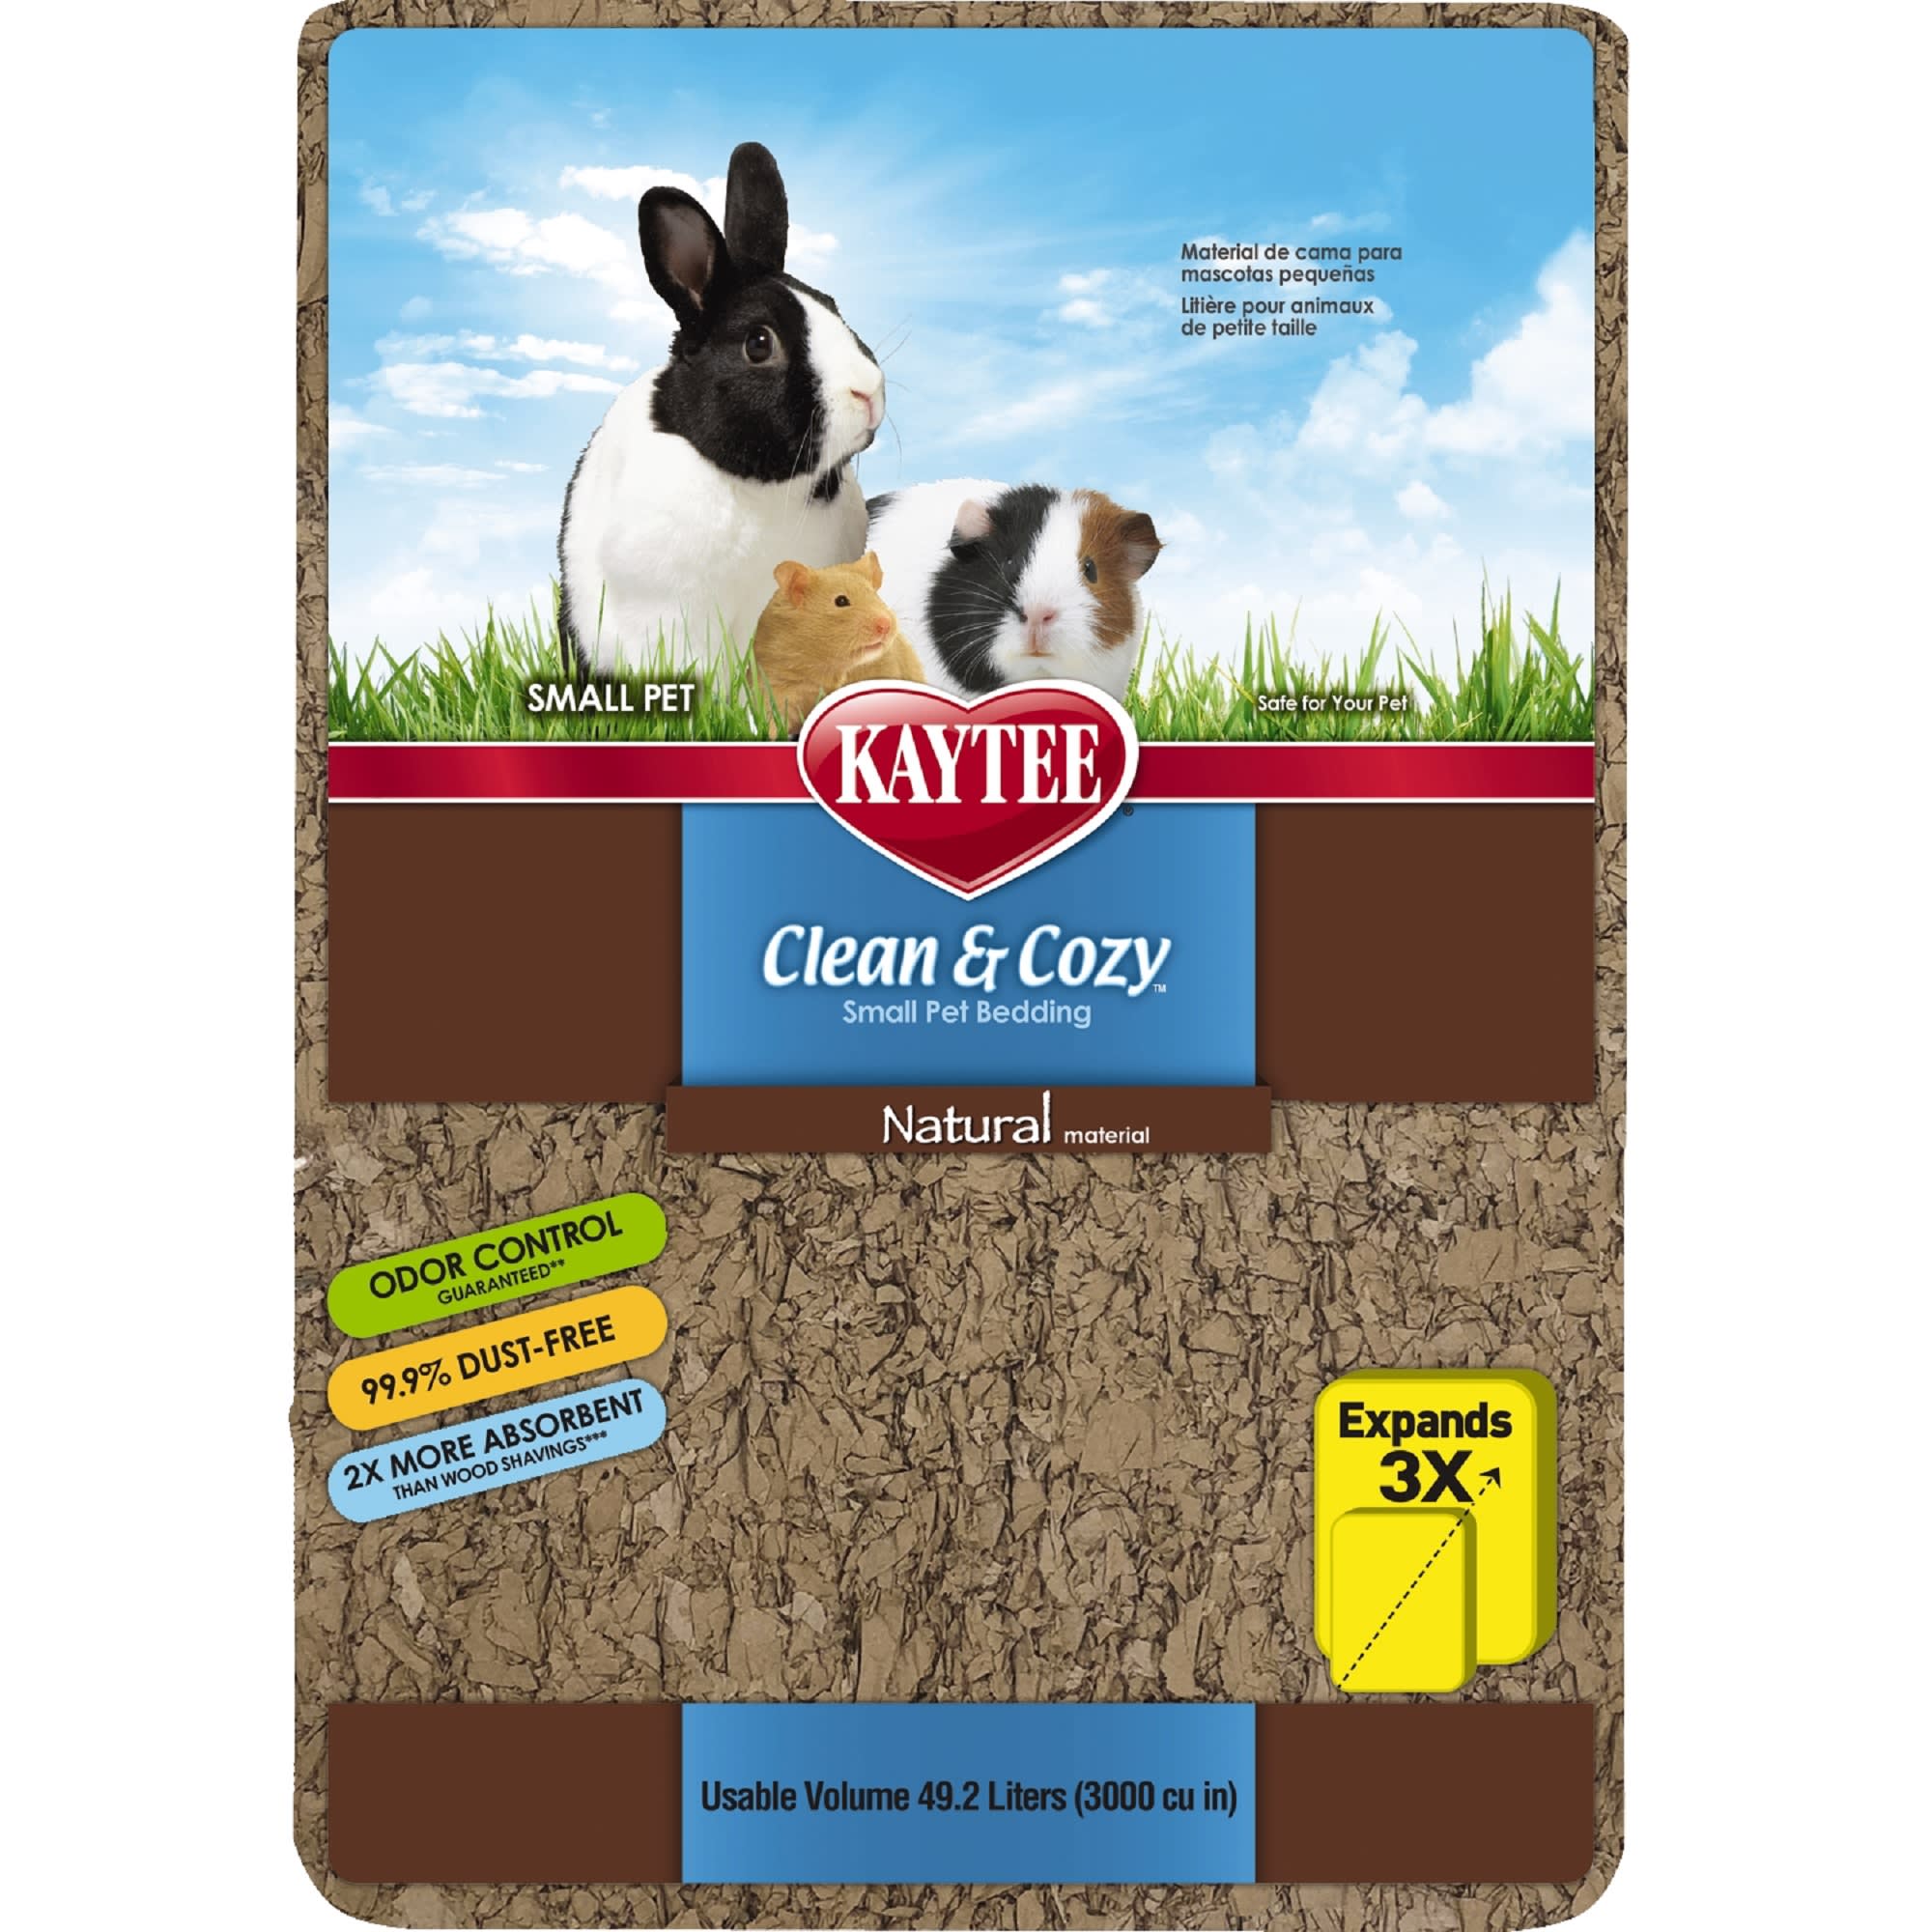 Kaytee Clean & Cozy Bettwaren für kleine Haustiere/ Nager/ Hamster 99,9% staubfrei Geruchskontrolle Weiß 85 Liter 